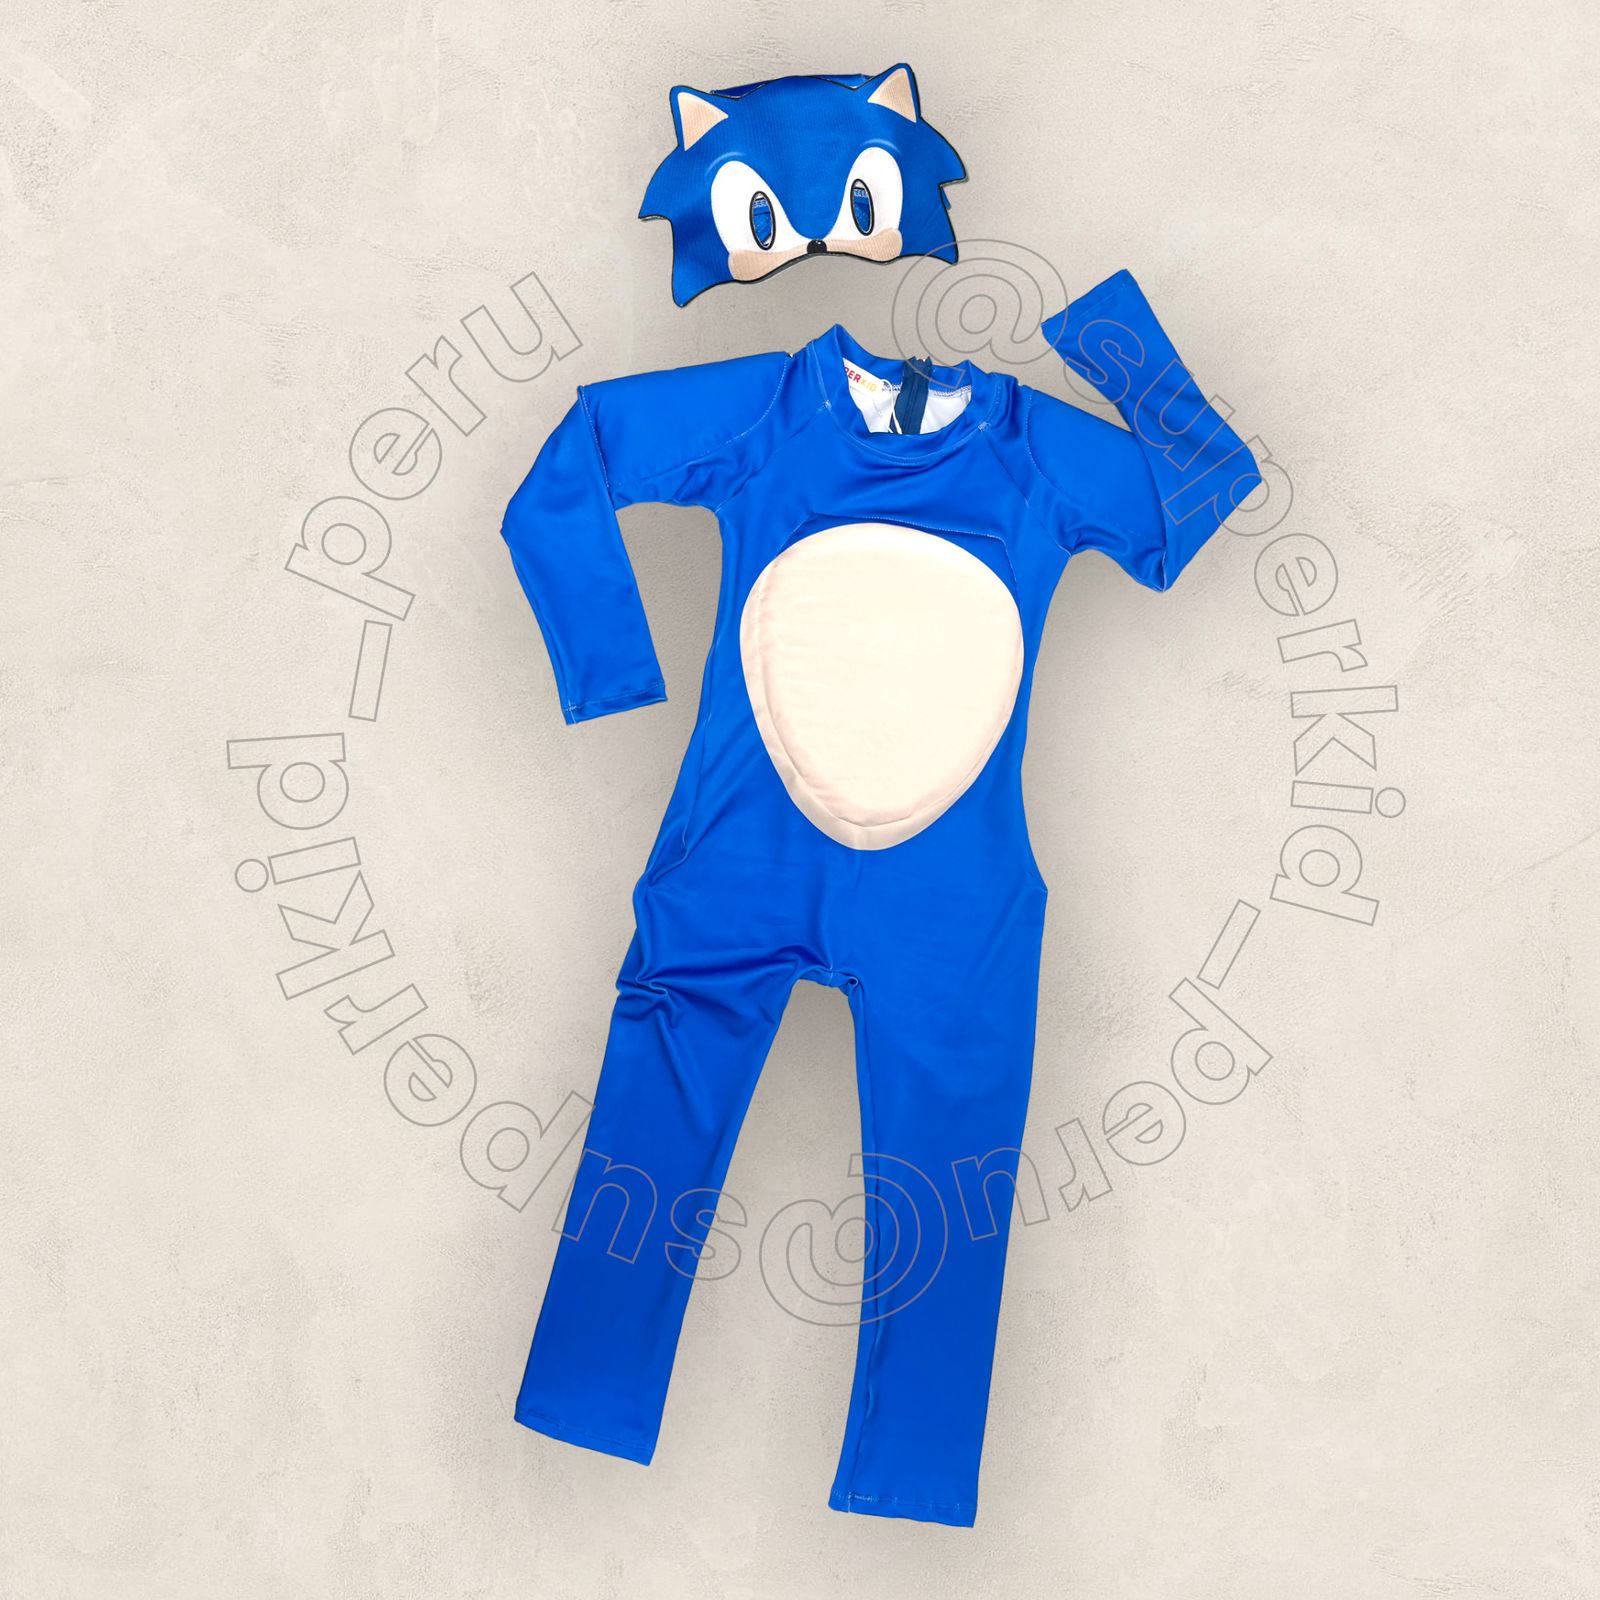 Disfraces el mundo del disfraz - Disfraz de Sonic para niño